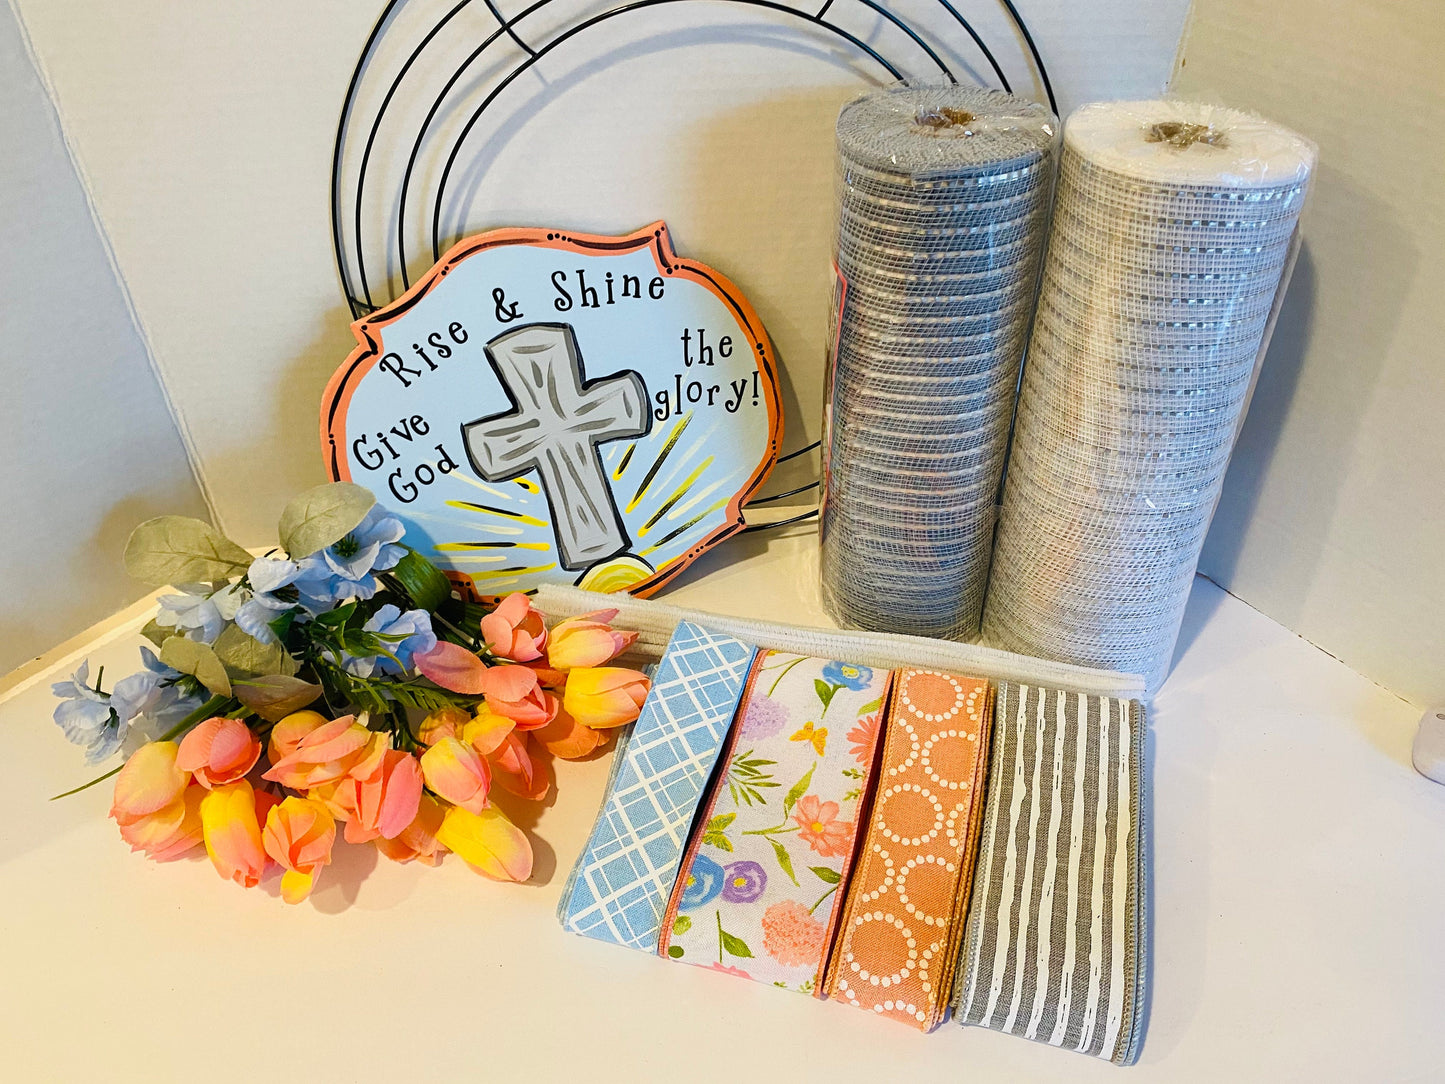 Rise & Shine Spring Spiritual Easter DIY Wreath Kit